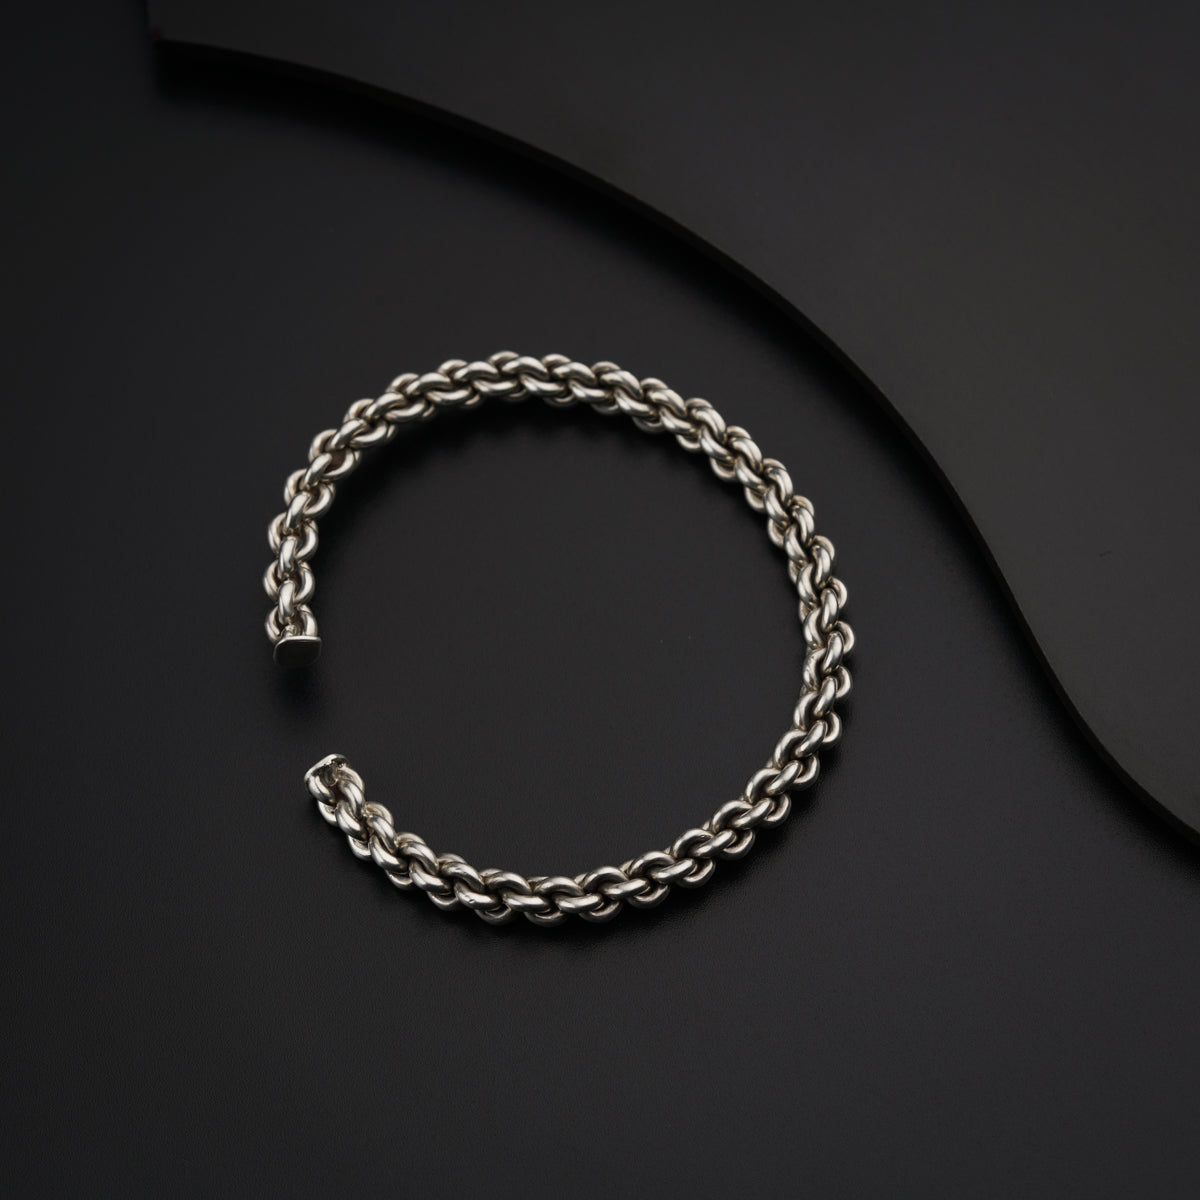 a silver bracelet on a black surface